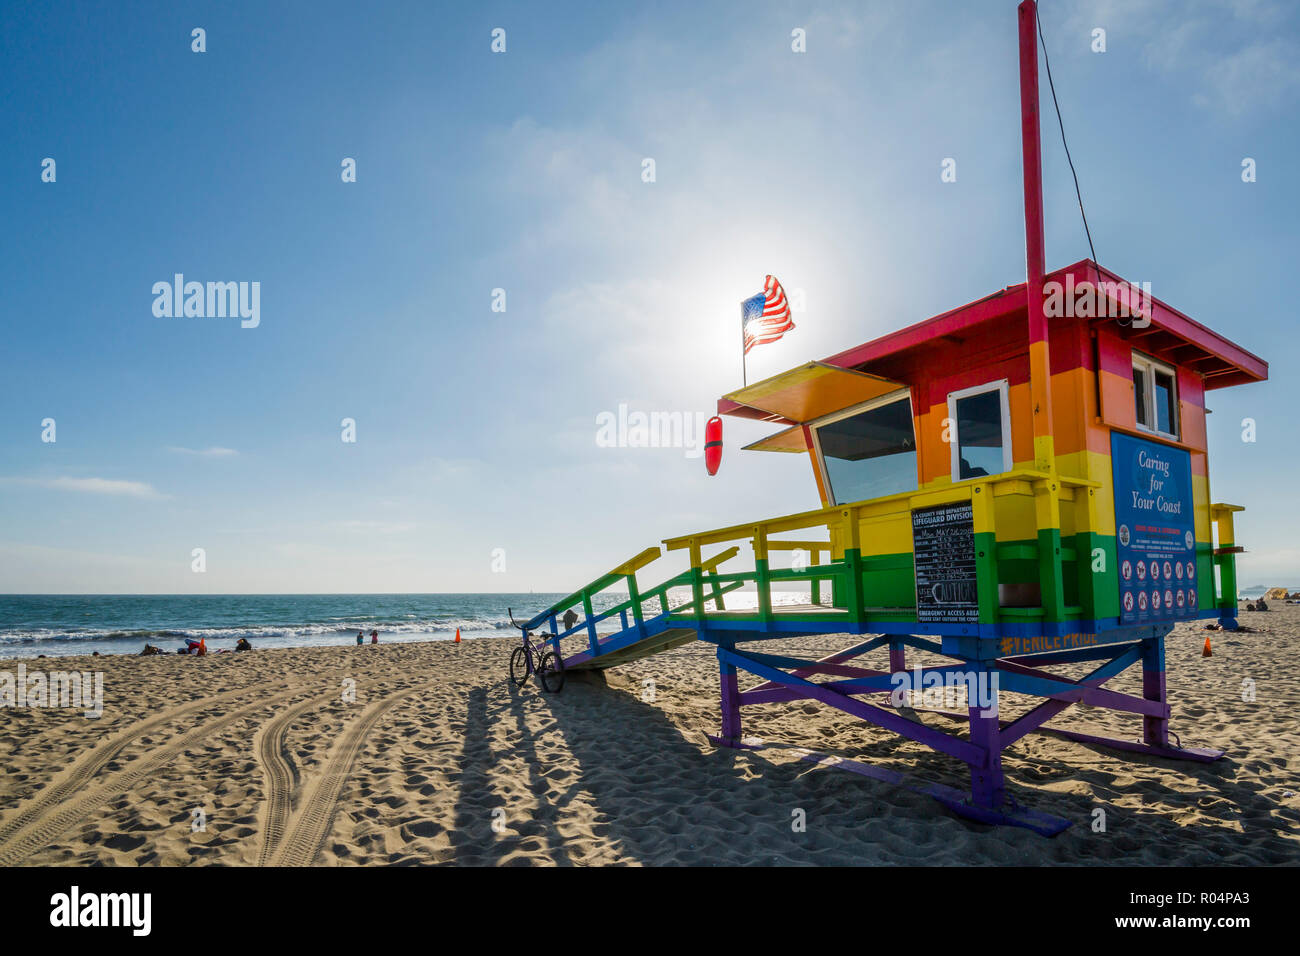 Avis de guet de sauveteur sur la plage de Venice, Los Angeles, Californie, États-Unis d'Amérique, Amérique du Nord Banque D'Images